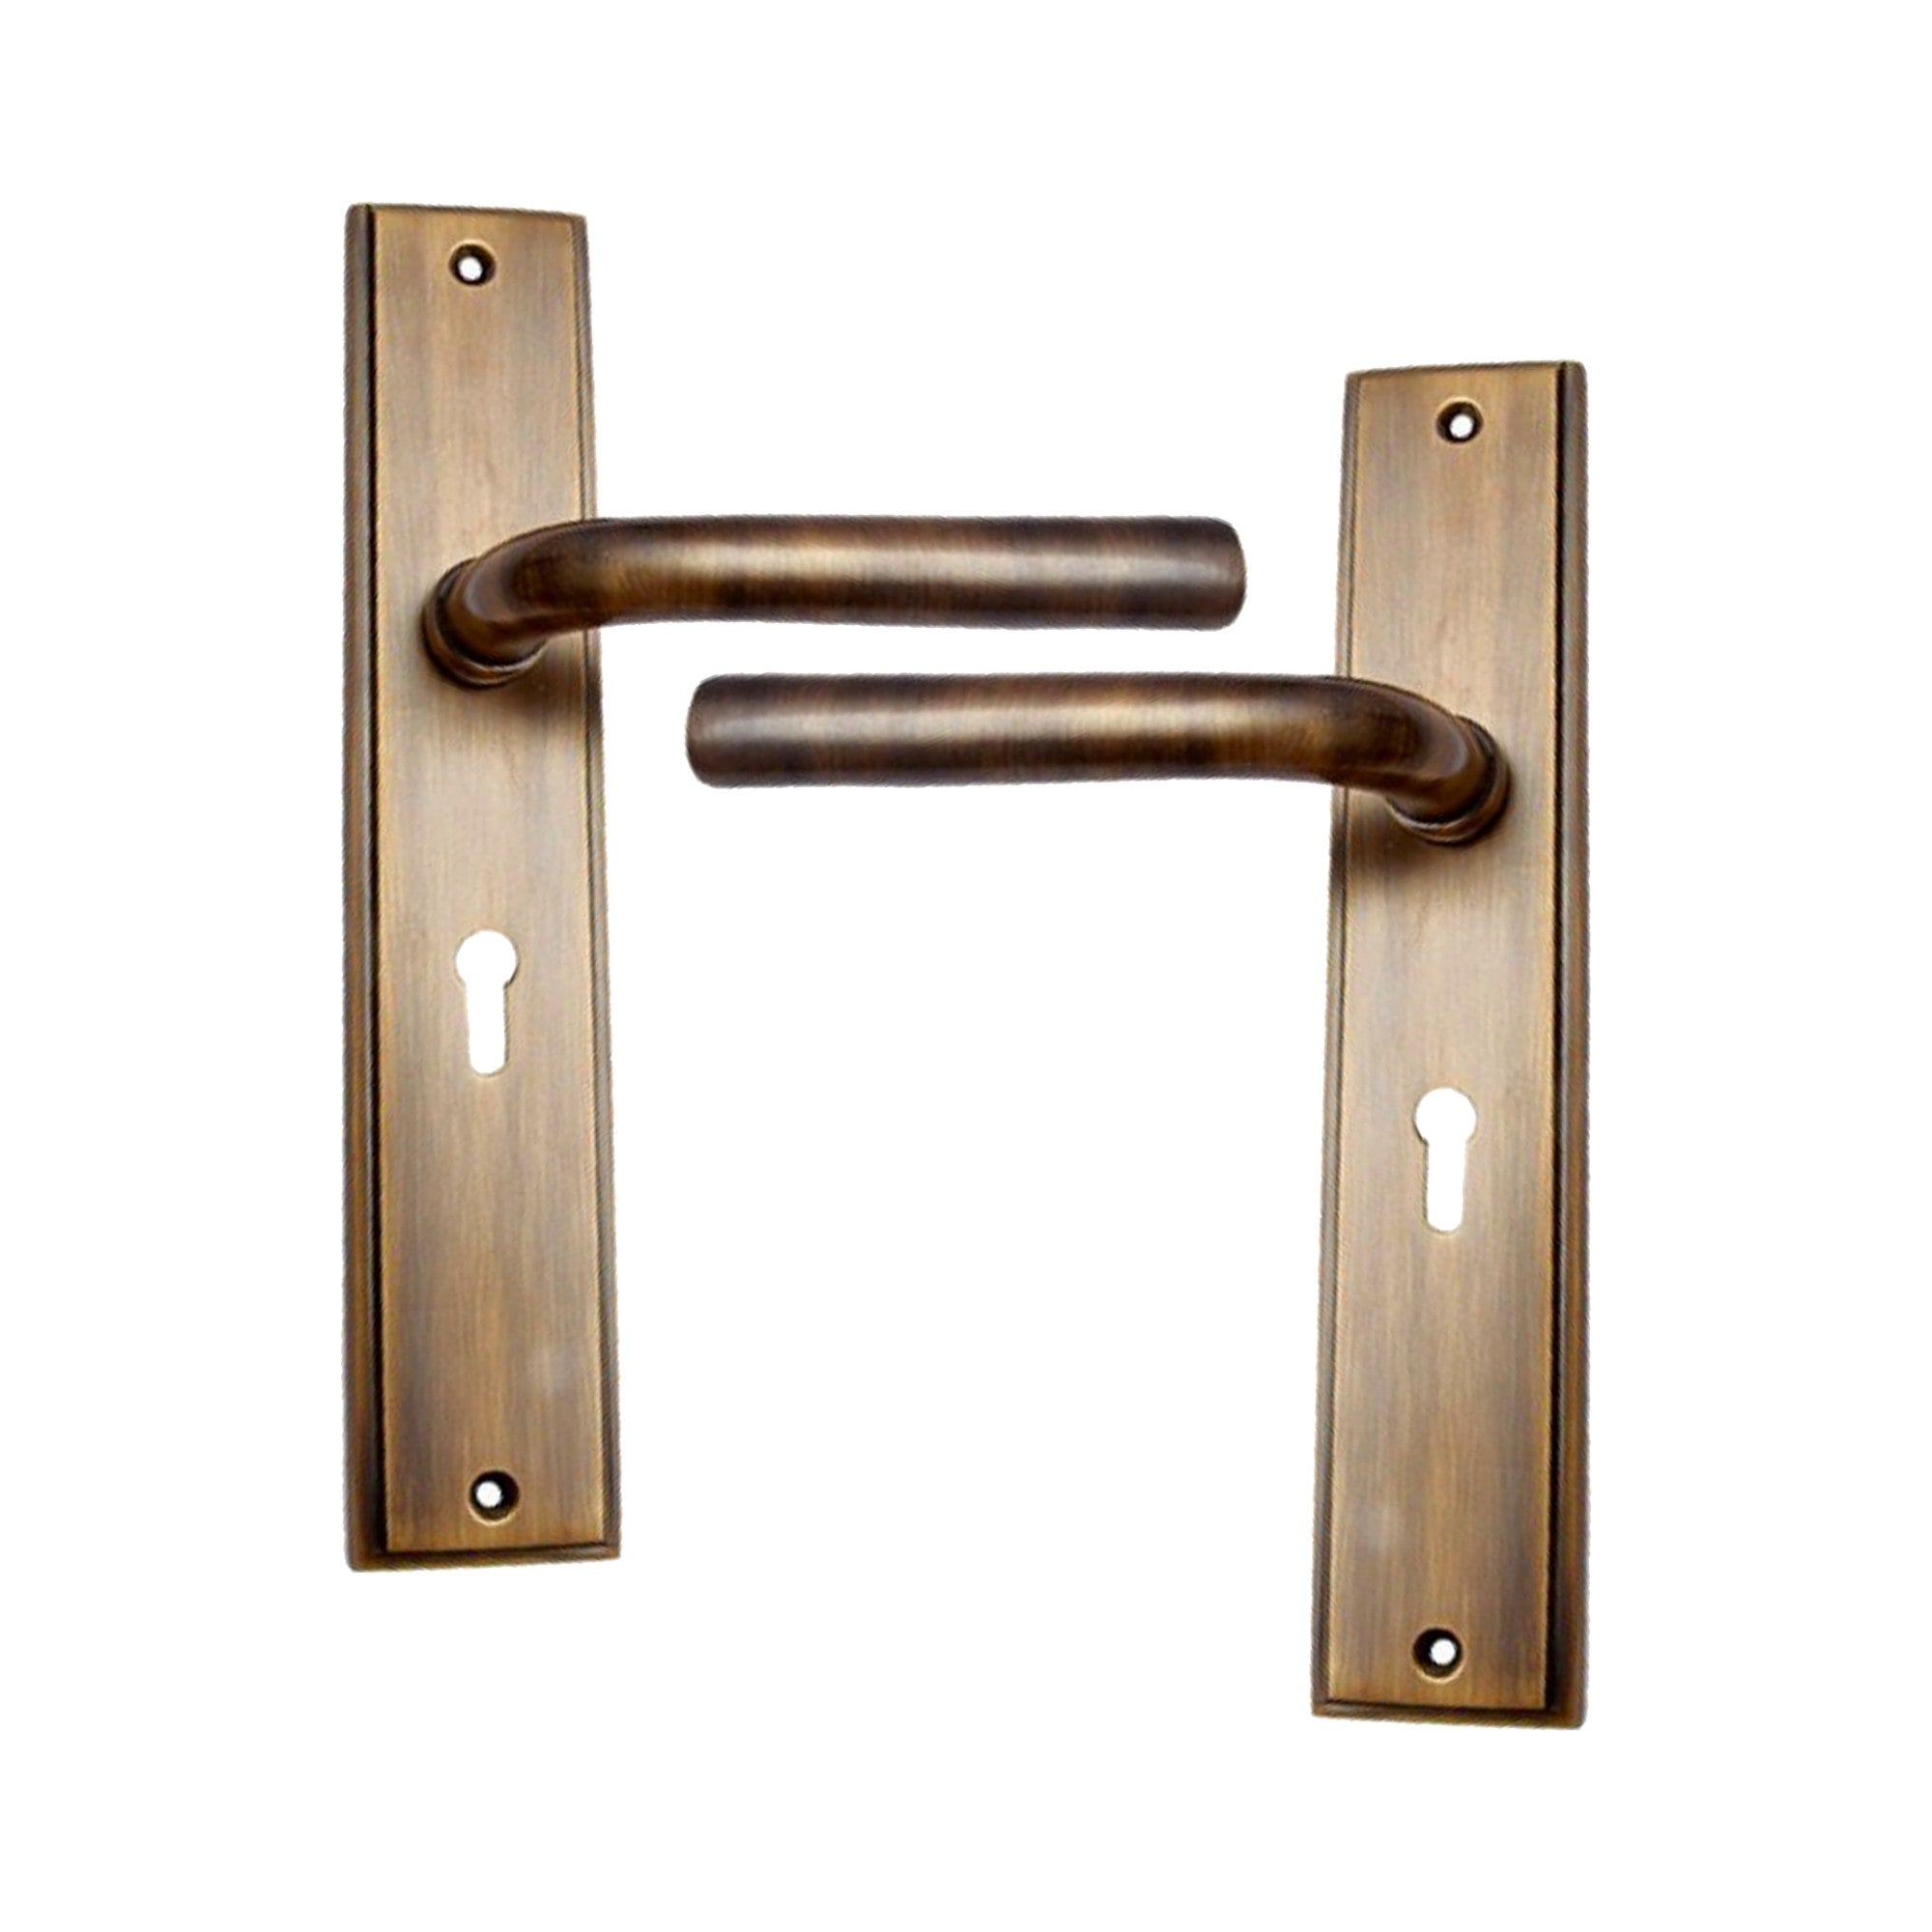 Brass Door Handle with Plate - Antique Brass